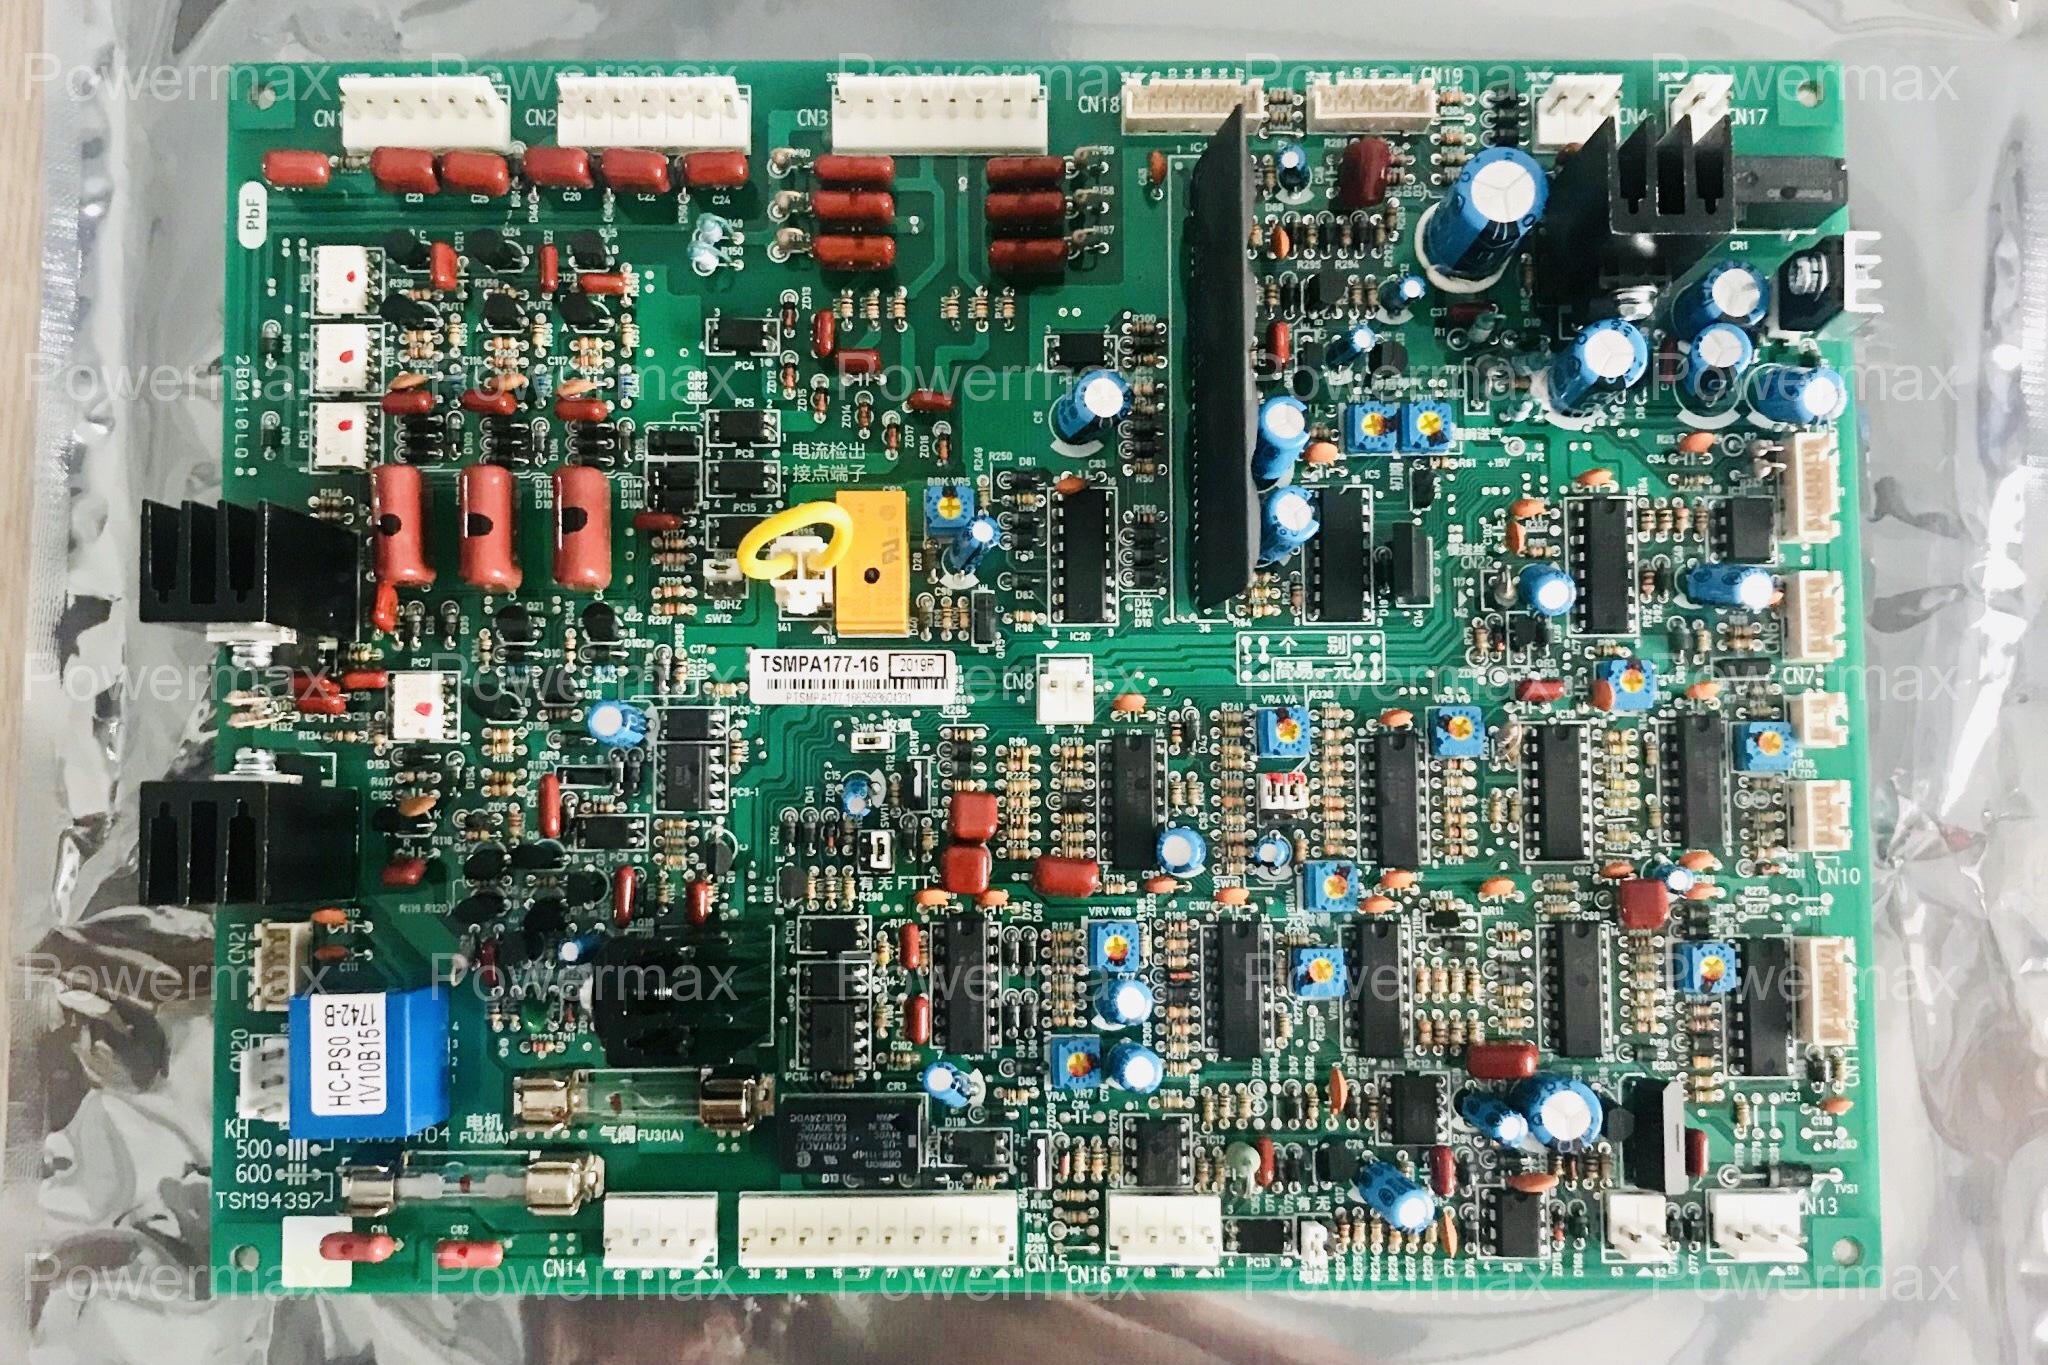 Board mạch TSM94397 máy hàn CO2 / Mig KHII 600 Panasonic